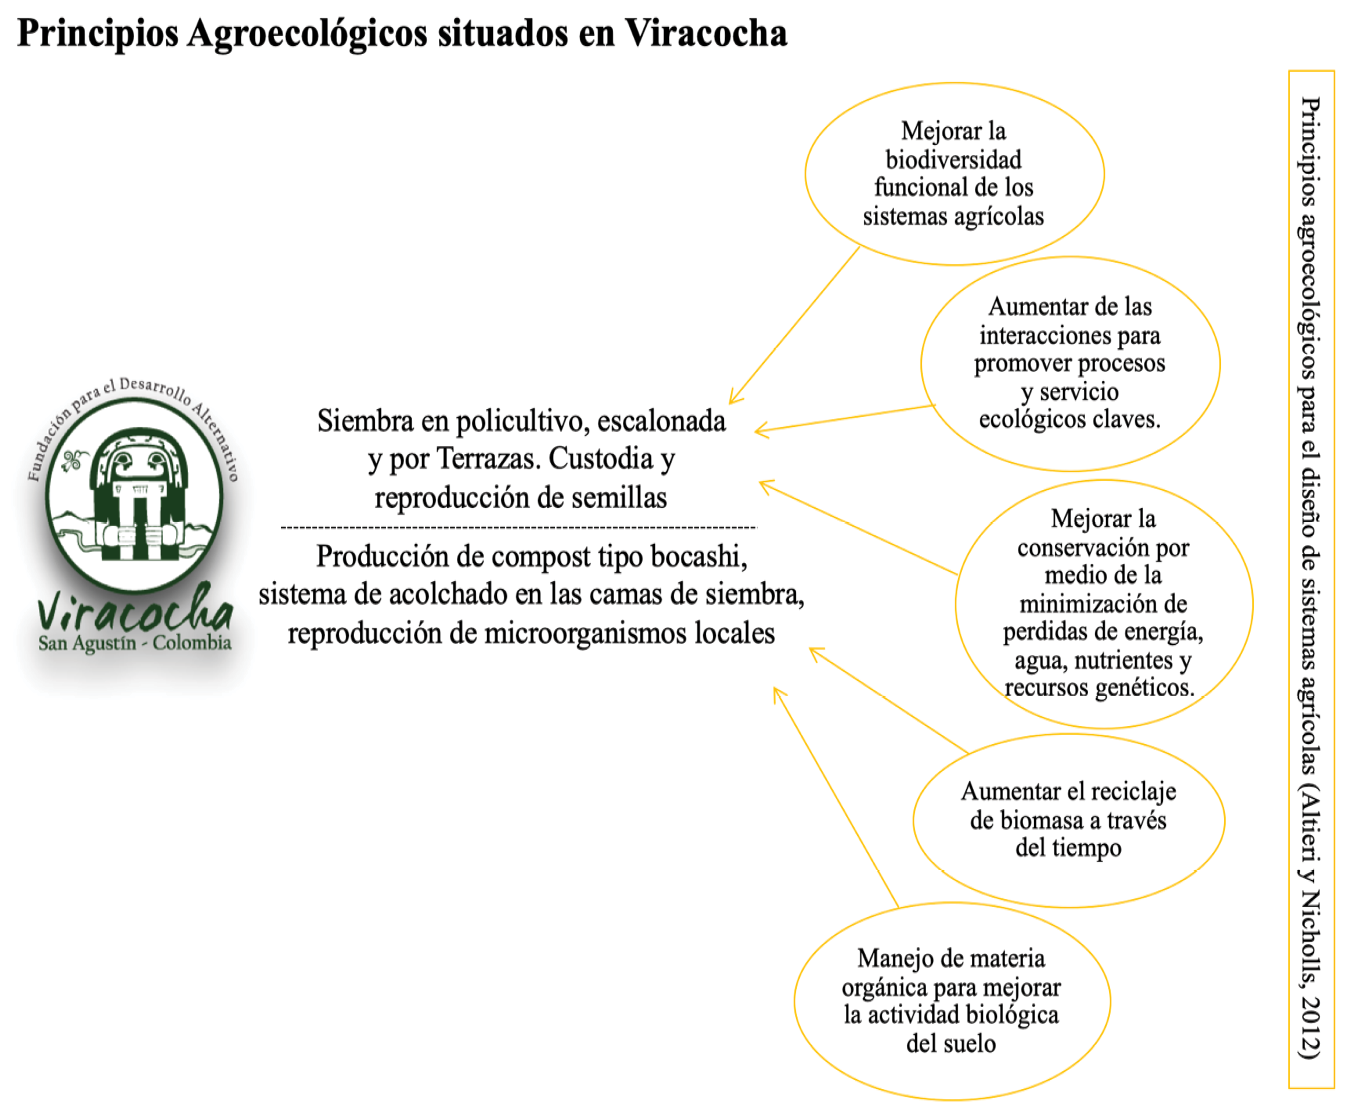 Esquema de aplicación de los principios agroecológicos en Viracocha